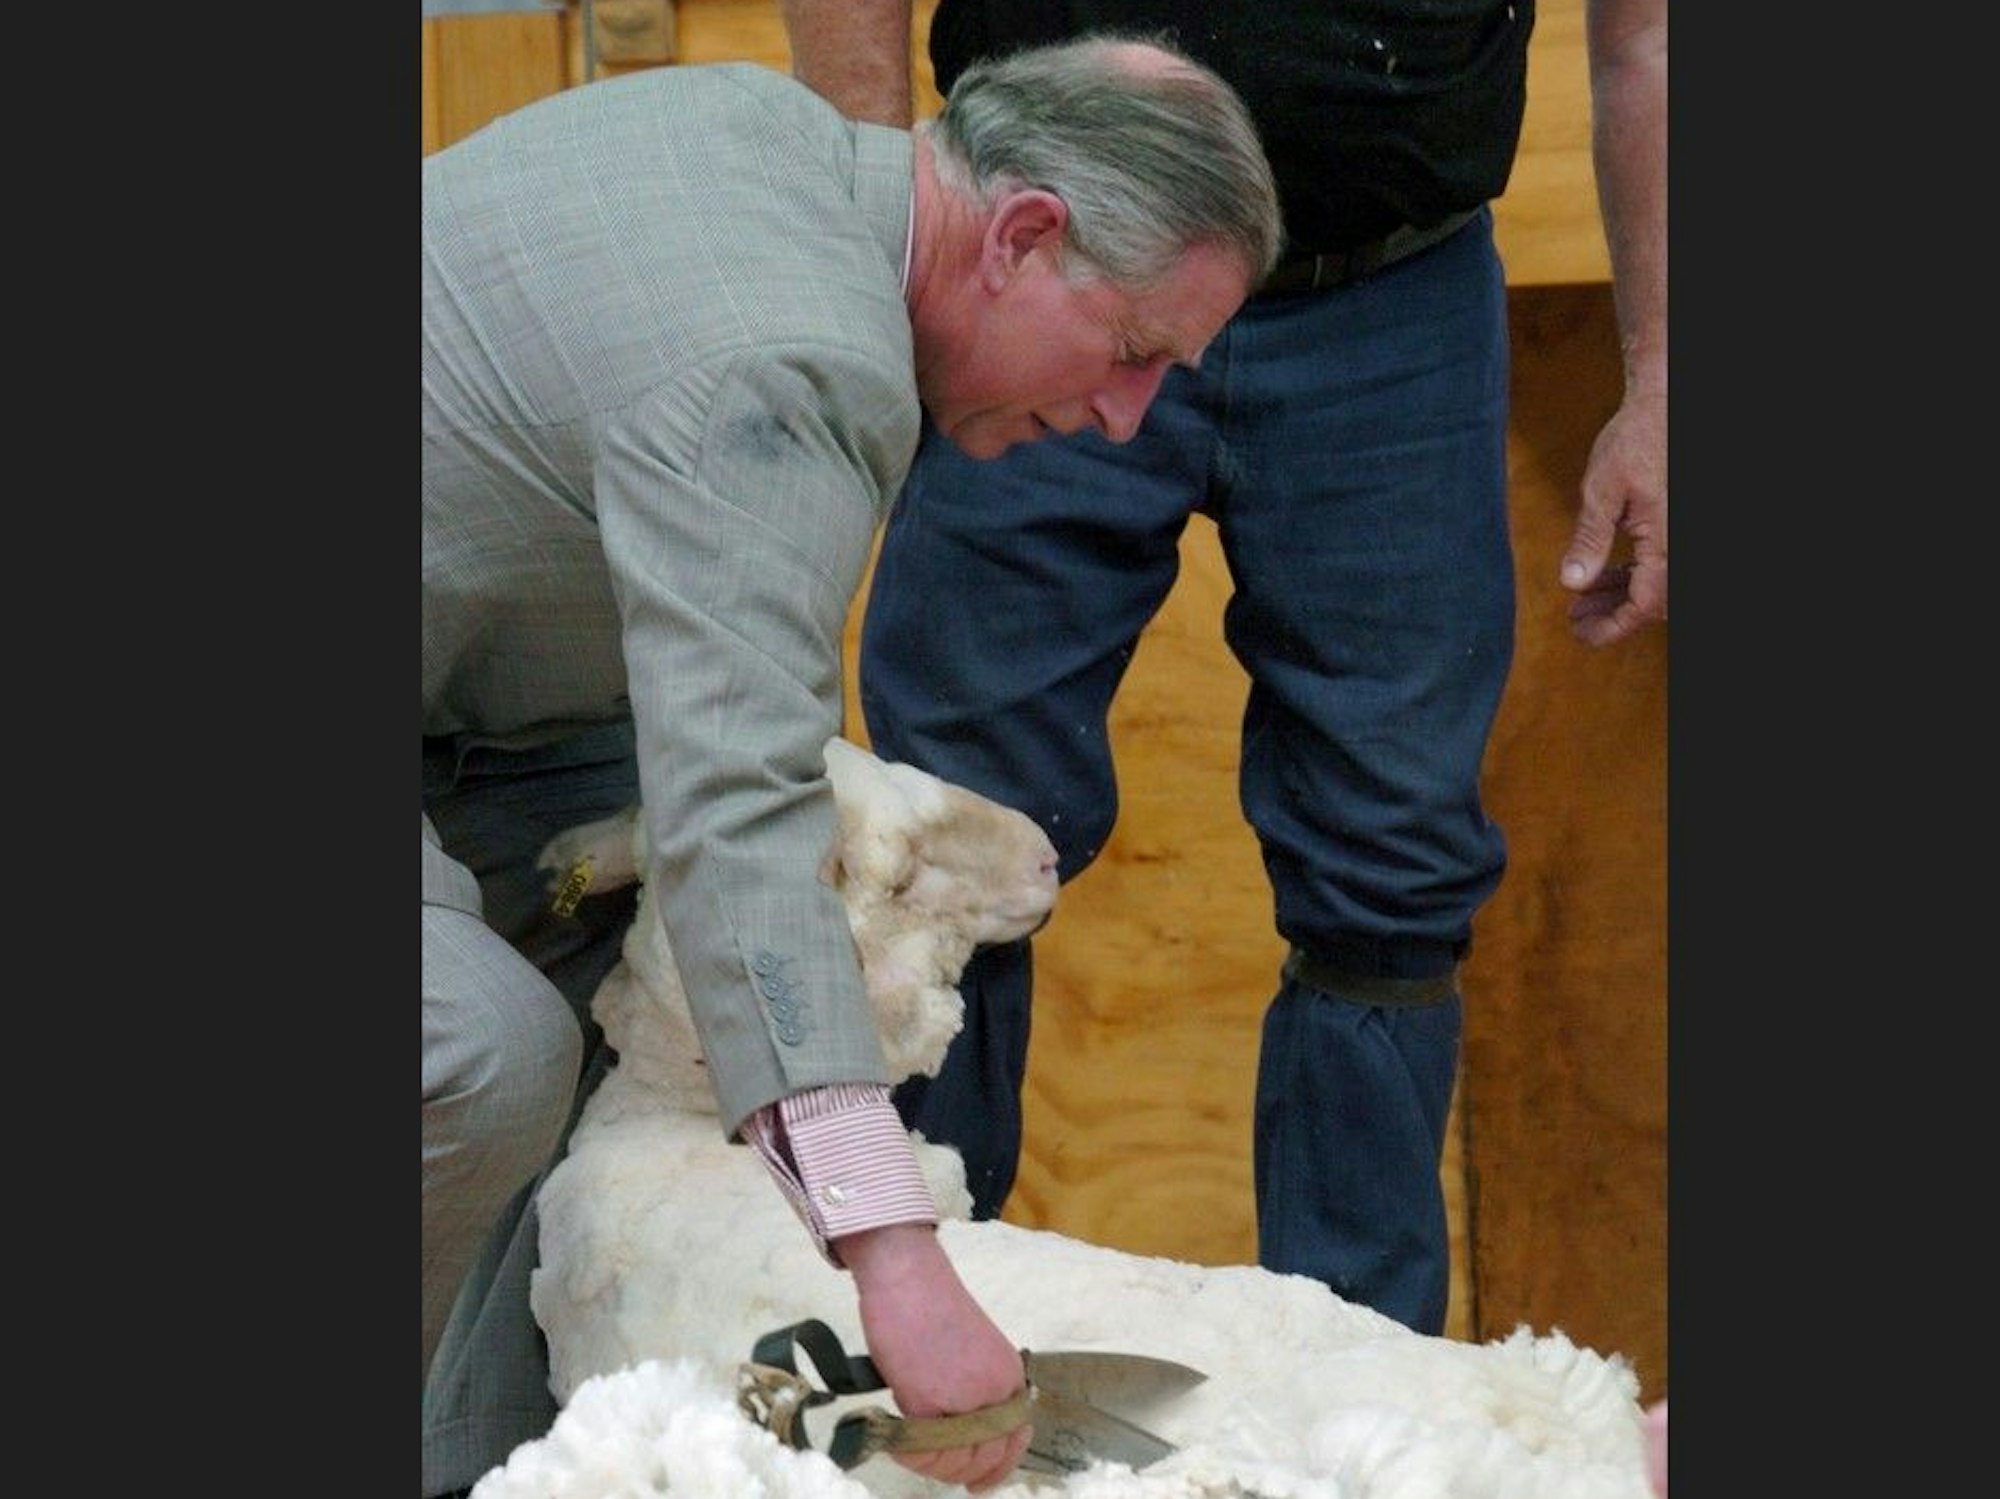 Am 7. März 2005 schert der damalige Prinz Charles (heute König Charles III.) ein Schaf in Neuseeland.